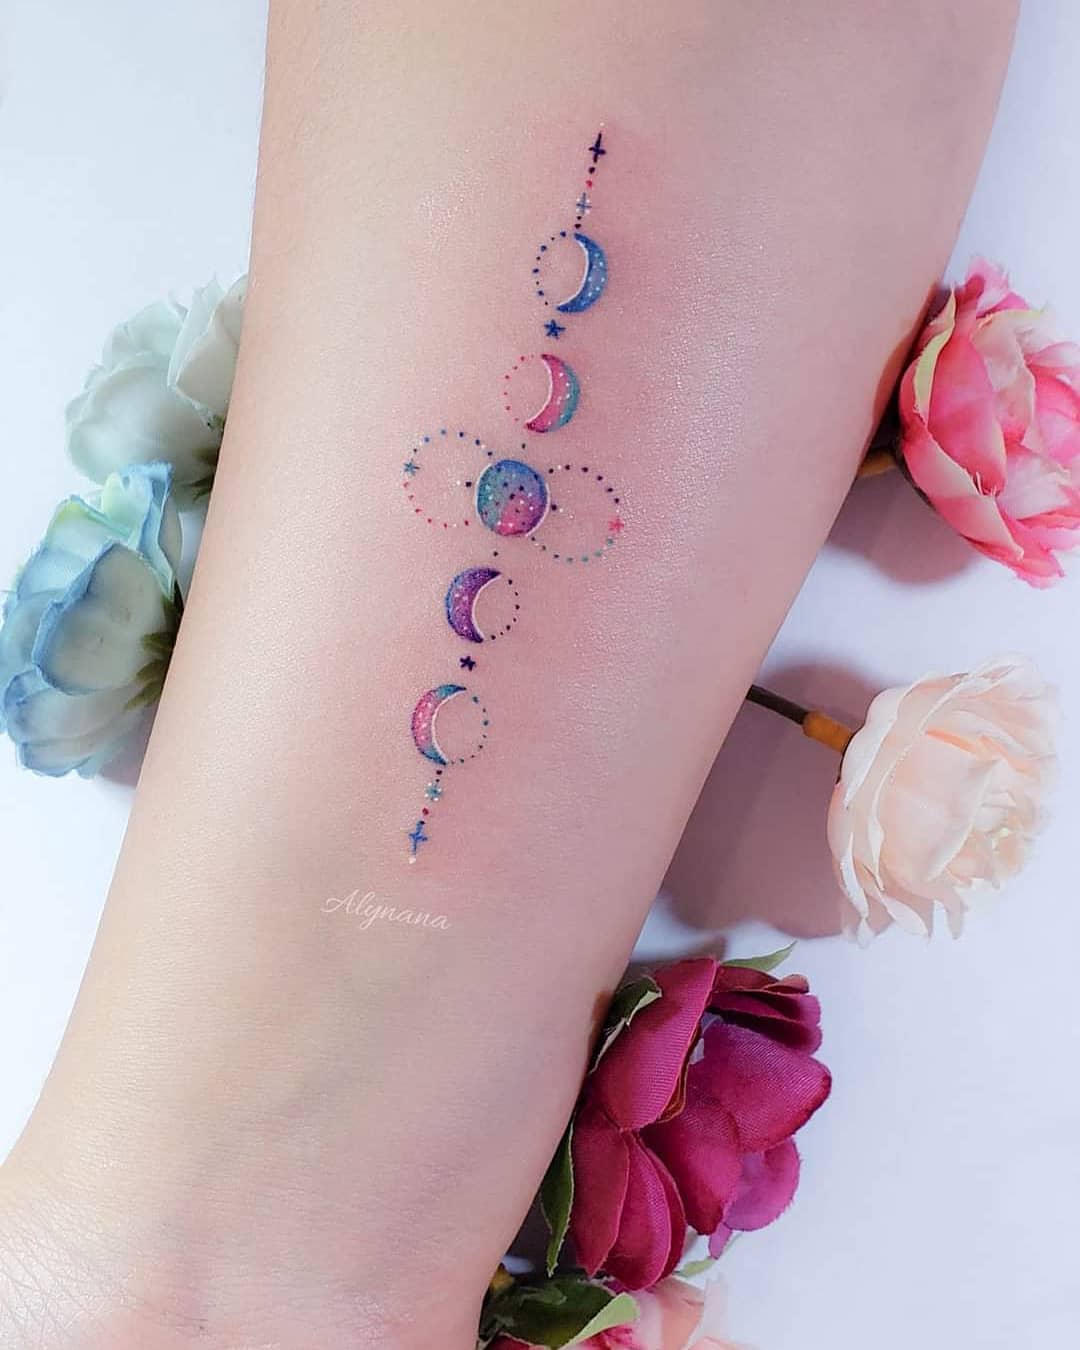 157 Zarte bunte Tattoos der Künstlerin Alynana Mondphasen mit kleinen Punkten und Sternen auf dem Unterarm